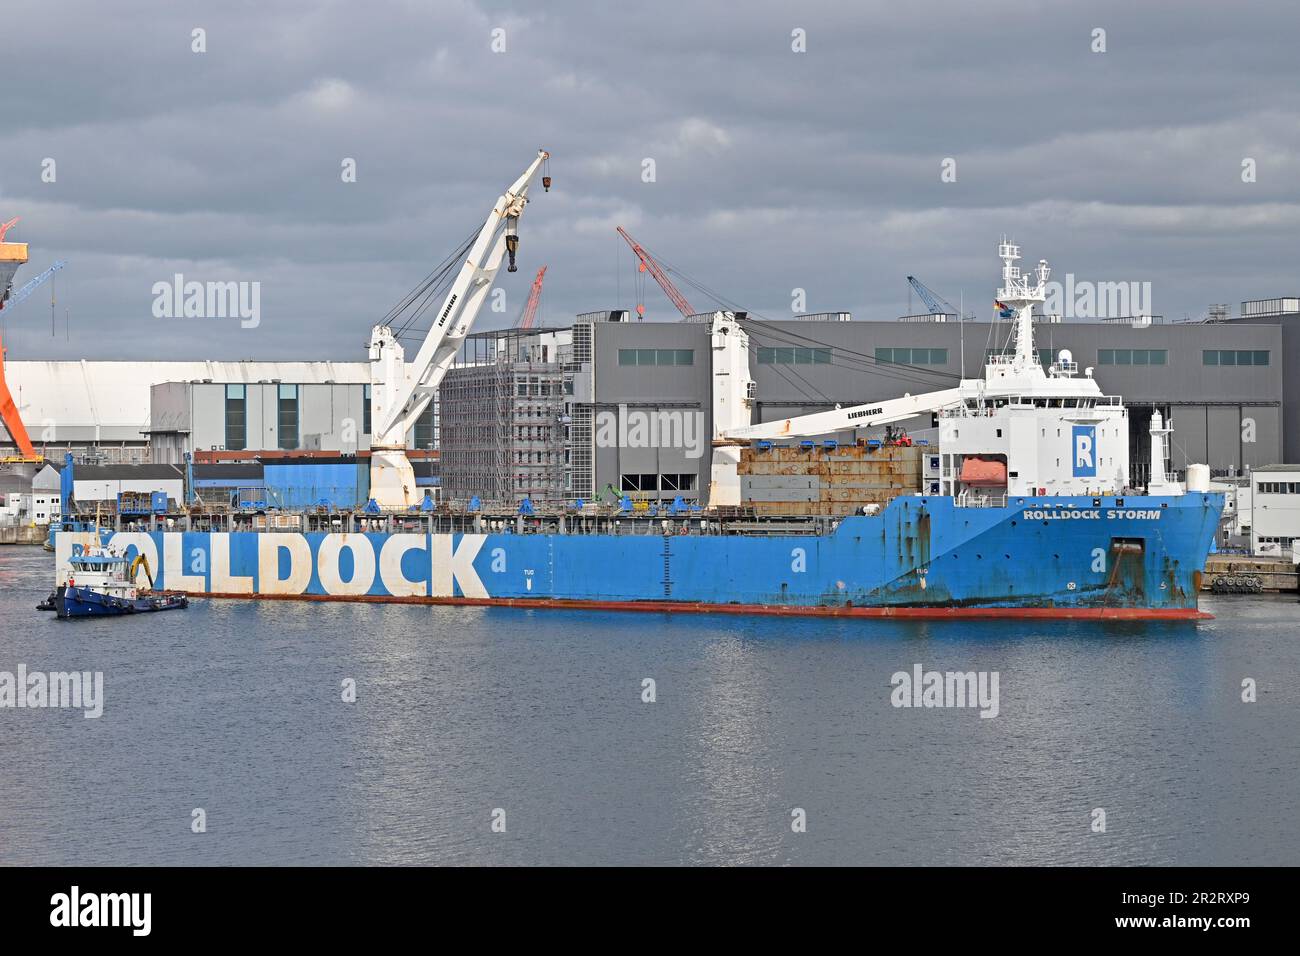 Schiffswerft ROLLDOCK STÜRMT die Frachtvorgänge in der TKMS-Werft Kiel (ehemals HDW) / Beladen des U-Boots MAKELLOS (Singapur Navy) Stockfoto